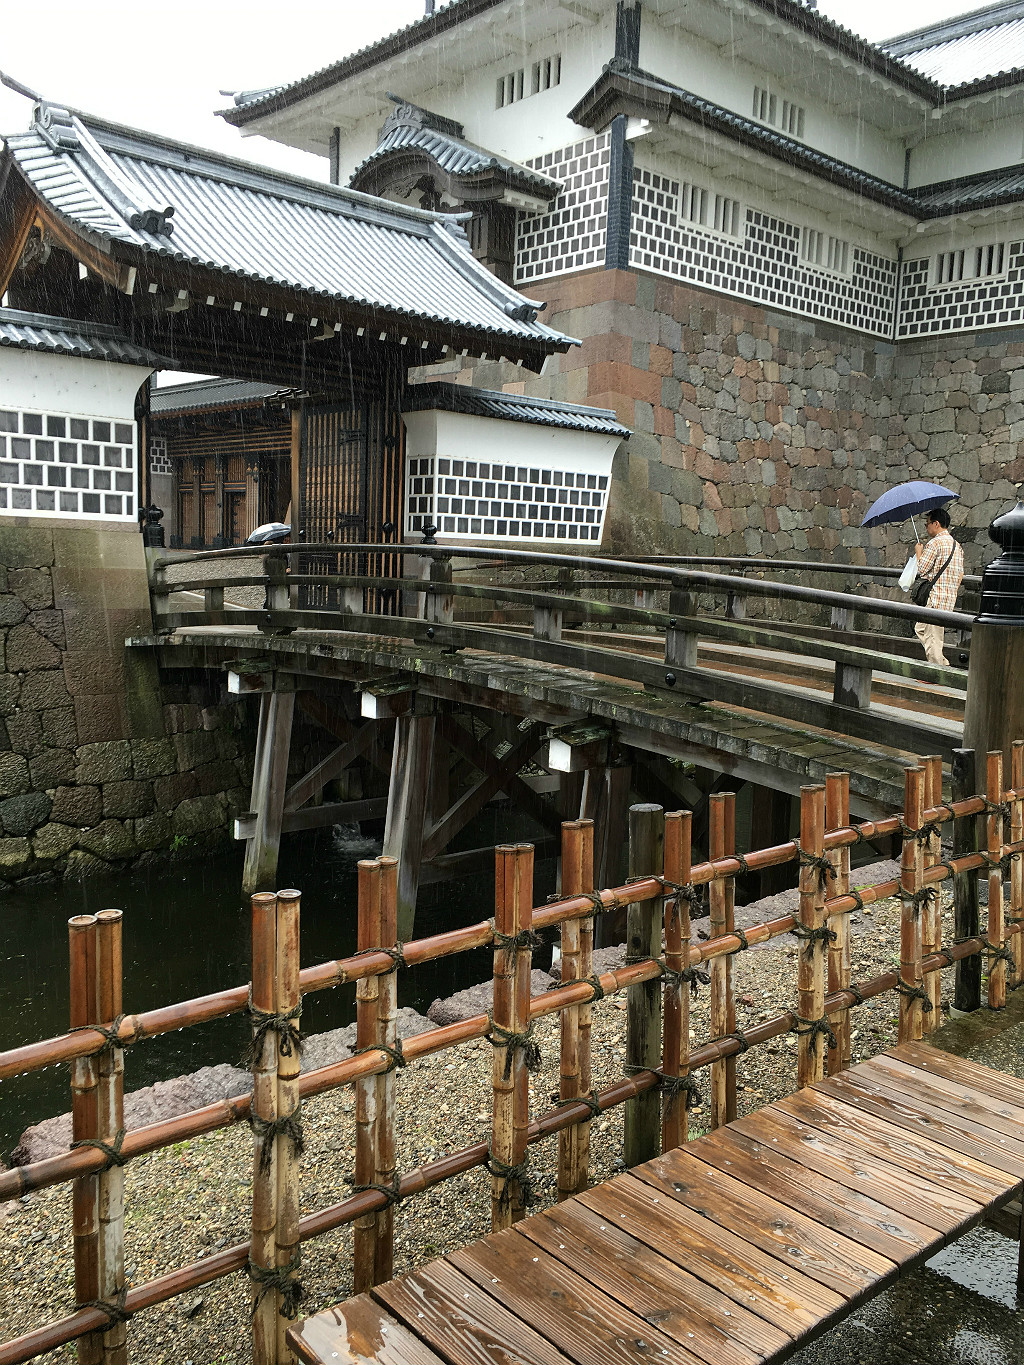 Kanazawa Castle Moat Rain, Aaron Maninno